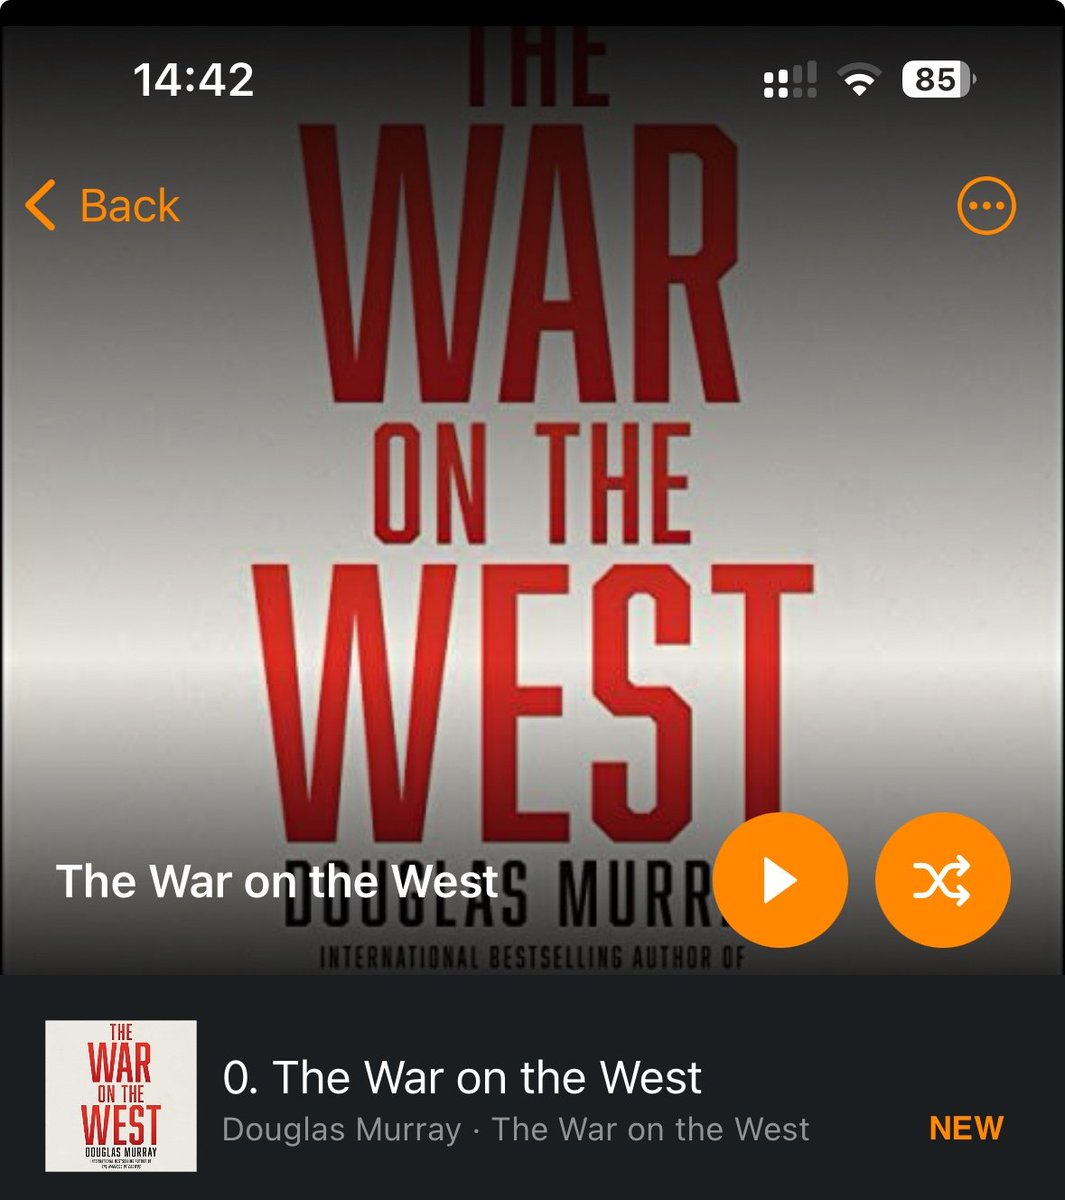 Nu The War on the West van @DouglasKMurray aan het luisteren / lezen.

Aanrader!